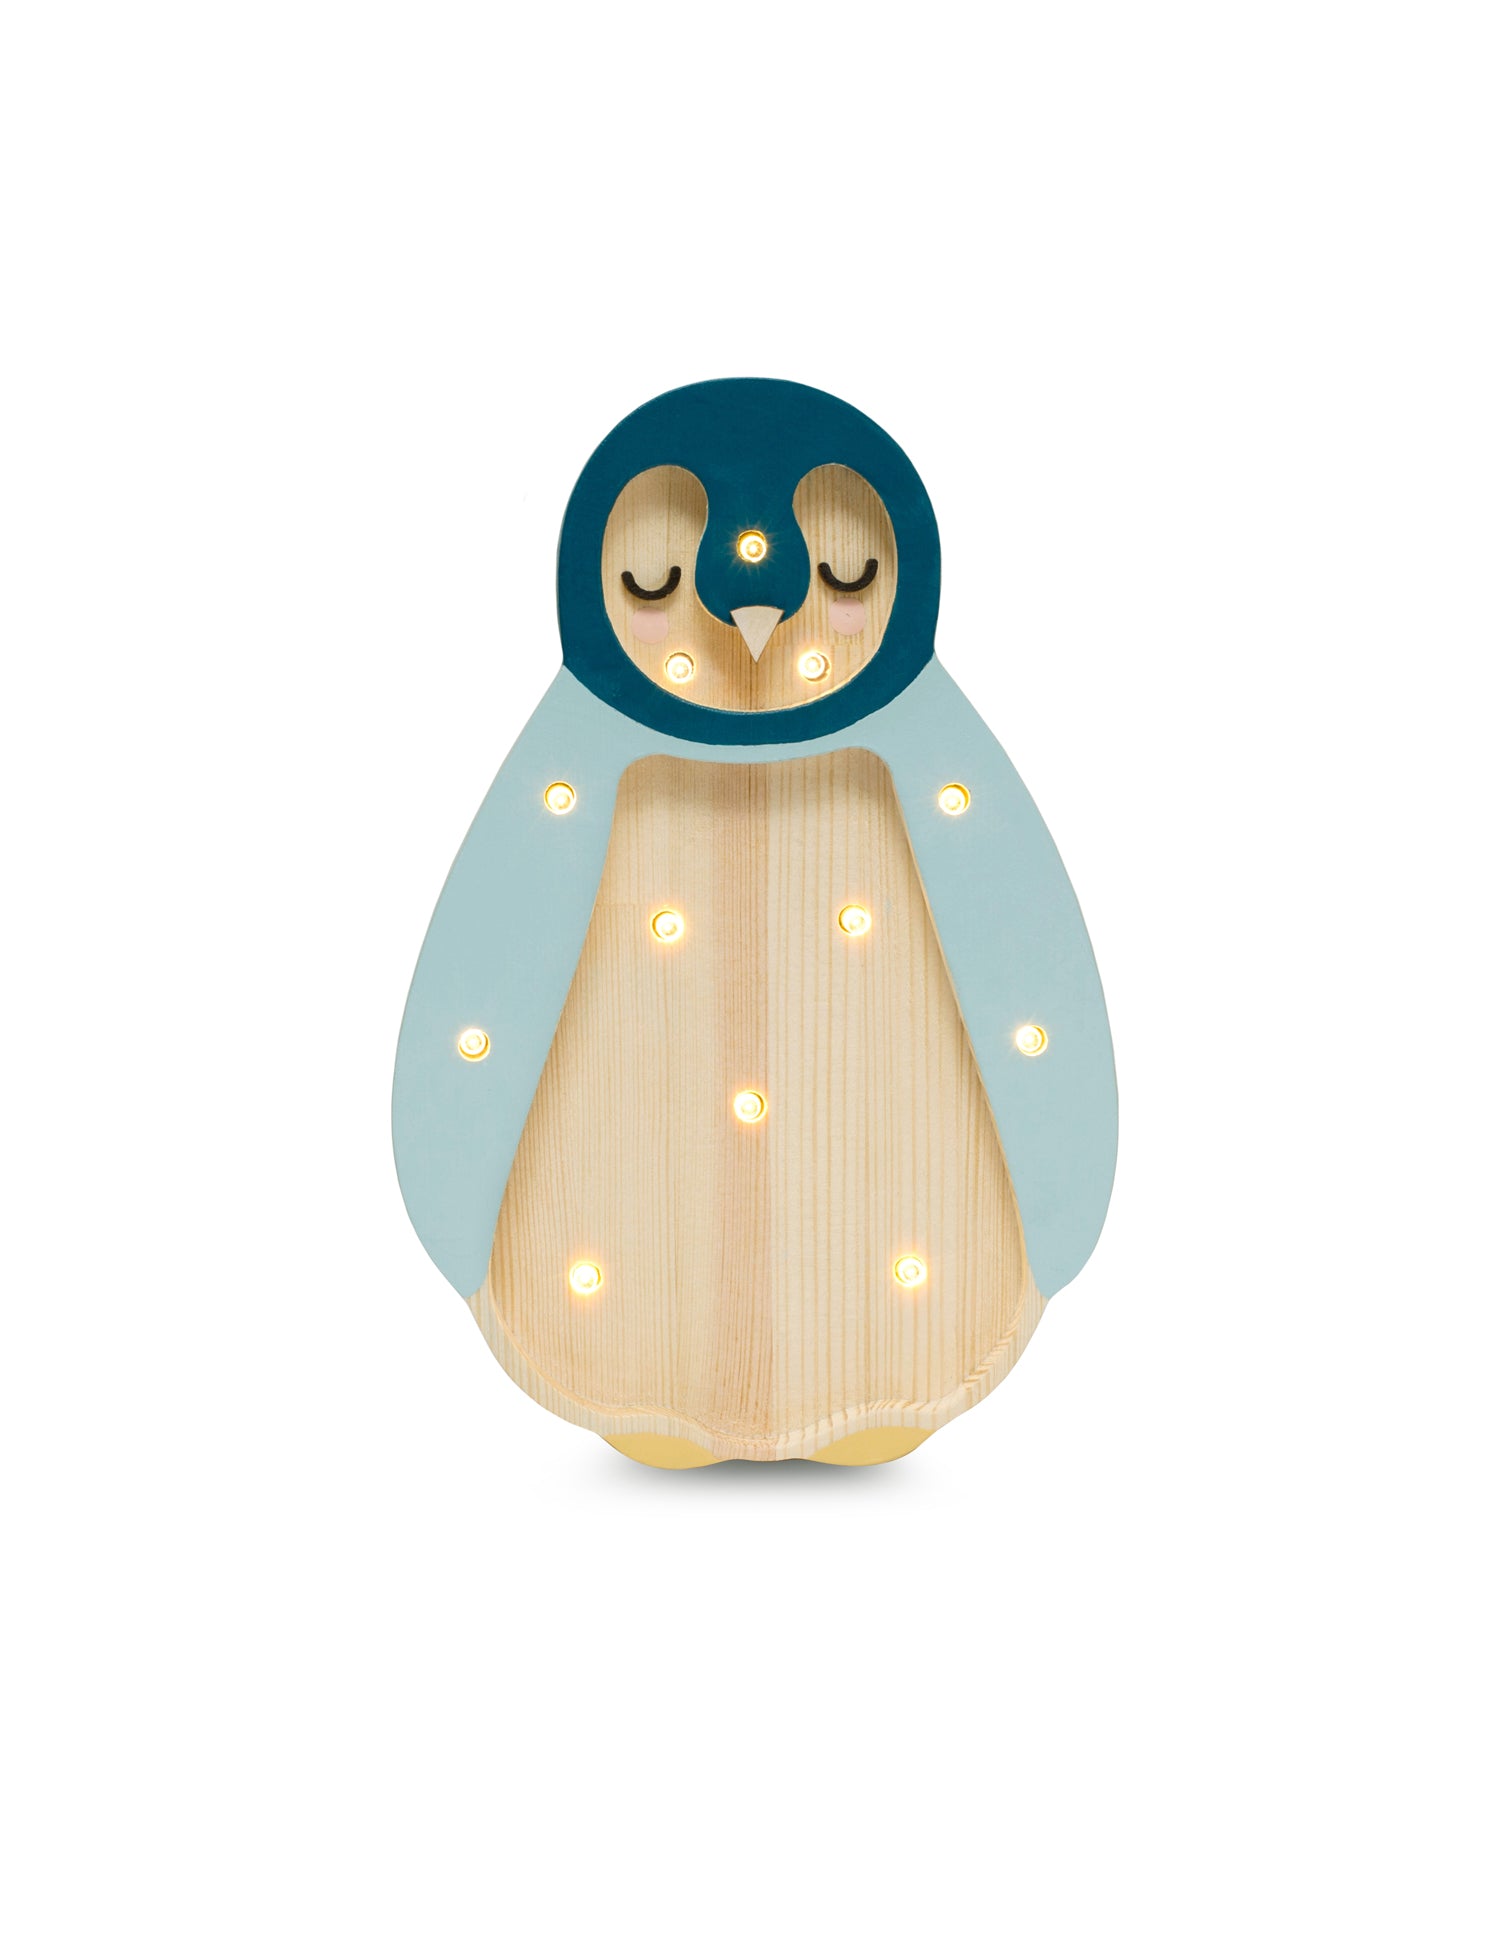 Veilleuse animaux : bébé pingouin en bois naturel clair, robe bleu ciel, tête bleu fondée et pieds jaune. Parsemé de 12 petites ampoules LED pour un éclairage doux et rassurant. Veilleuse Little Lights